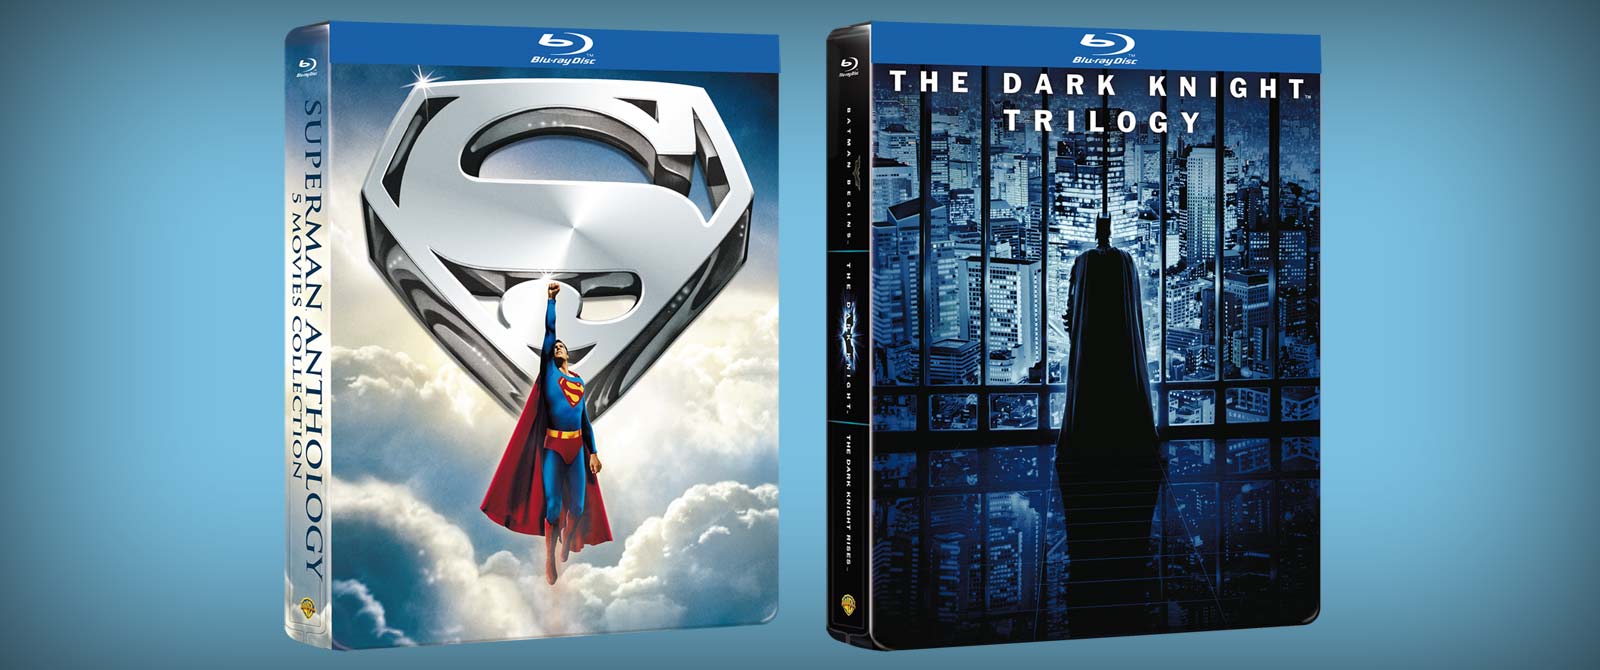 La Trilogia de Il Cavaliere Oscuro e Superman Anthology in Blu-Ray Steelbook